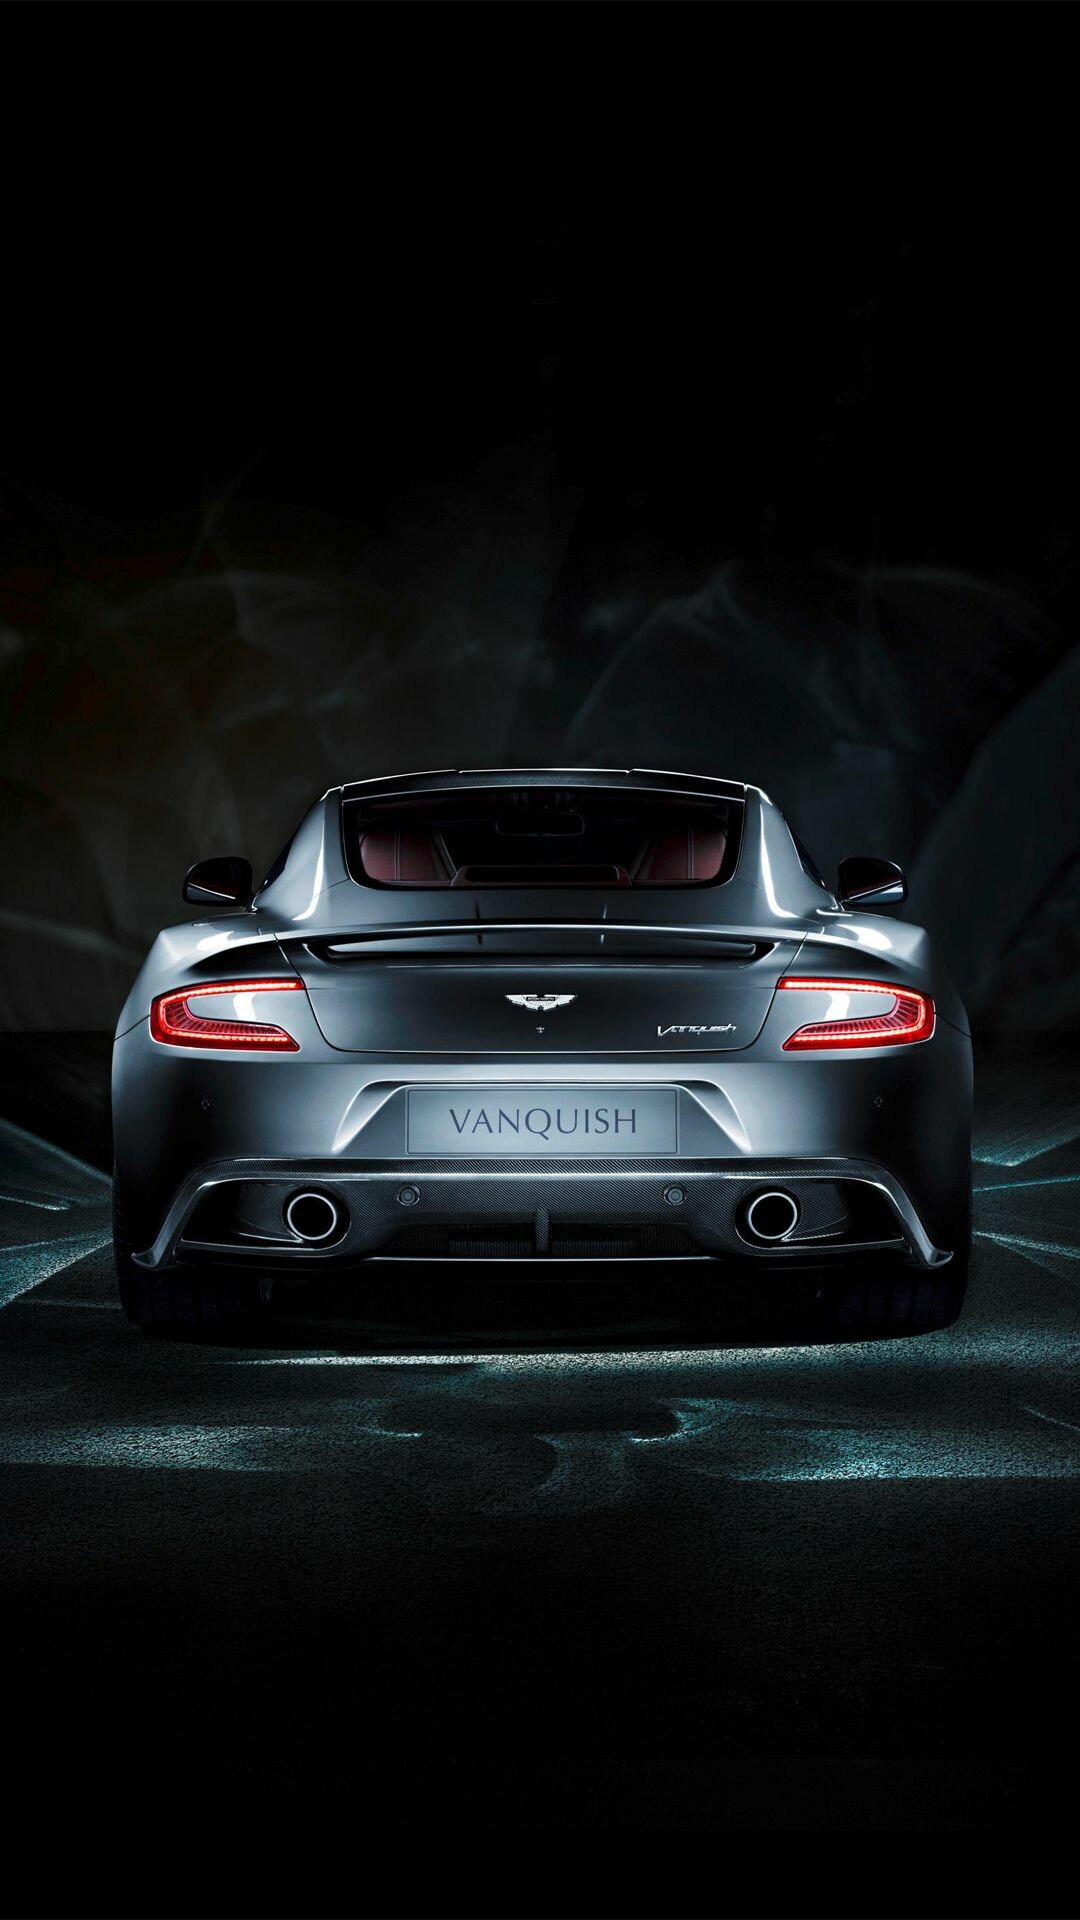 Aston Martin: British car company, Origins are traced back to 1913. 1080x1920 Full HD Wallpaper.